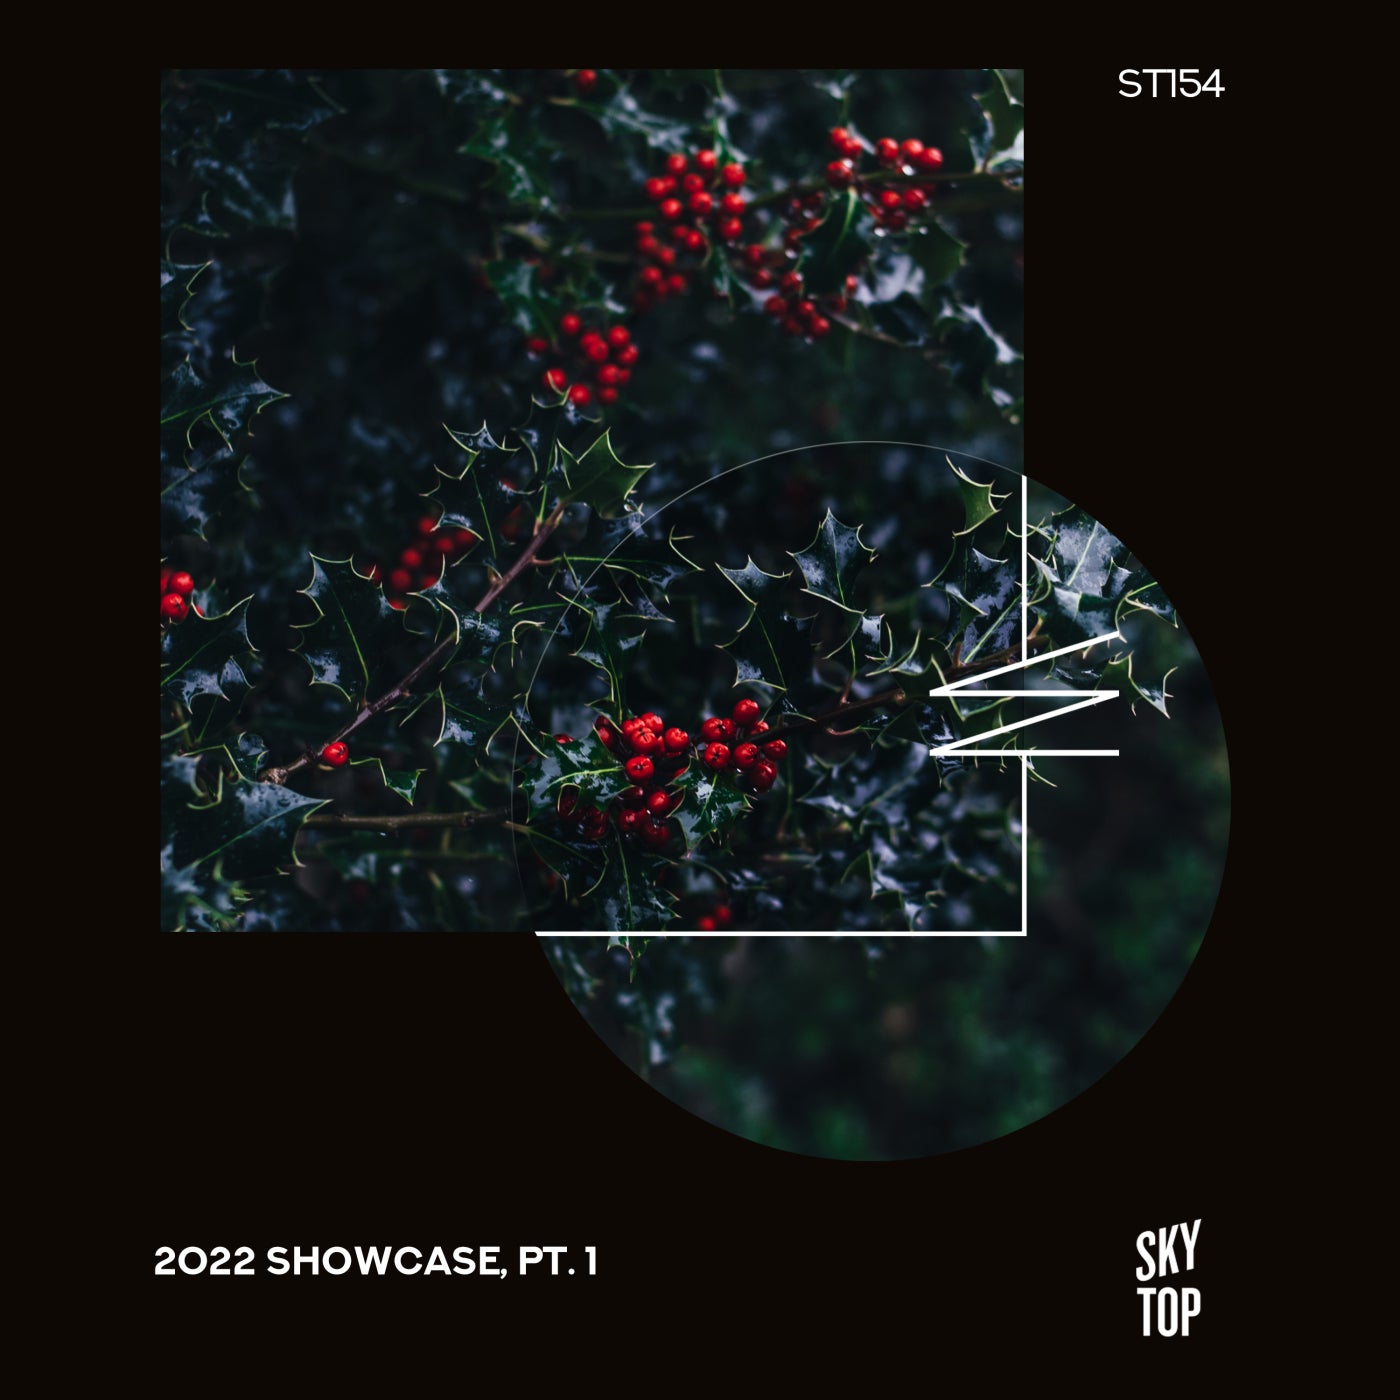 2022 Showcase, Pt. 1